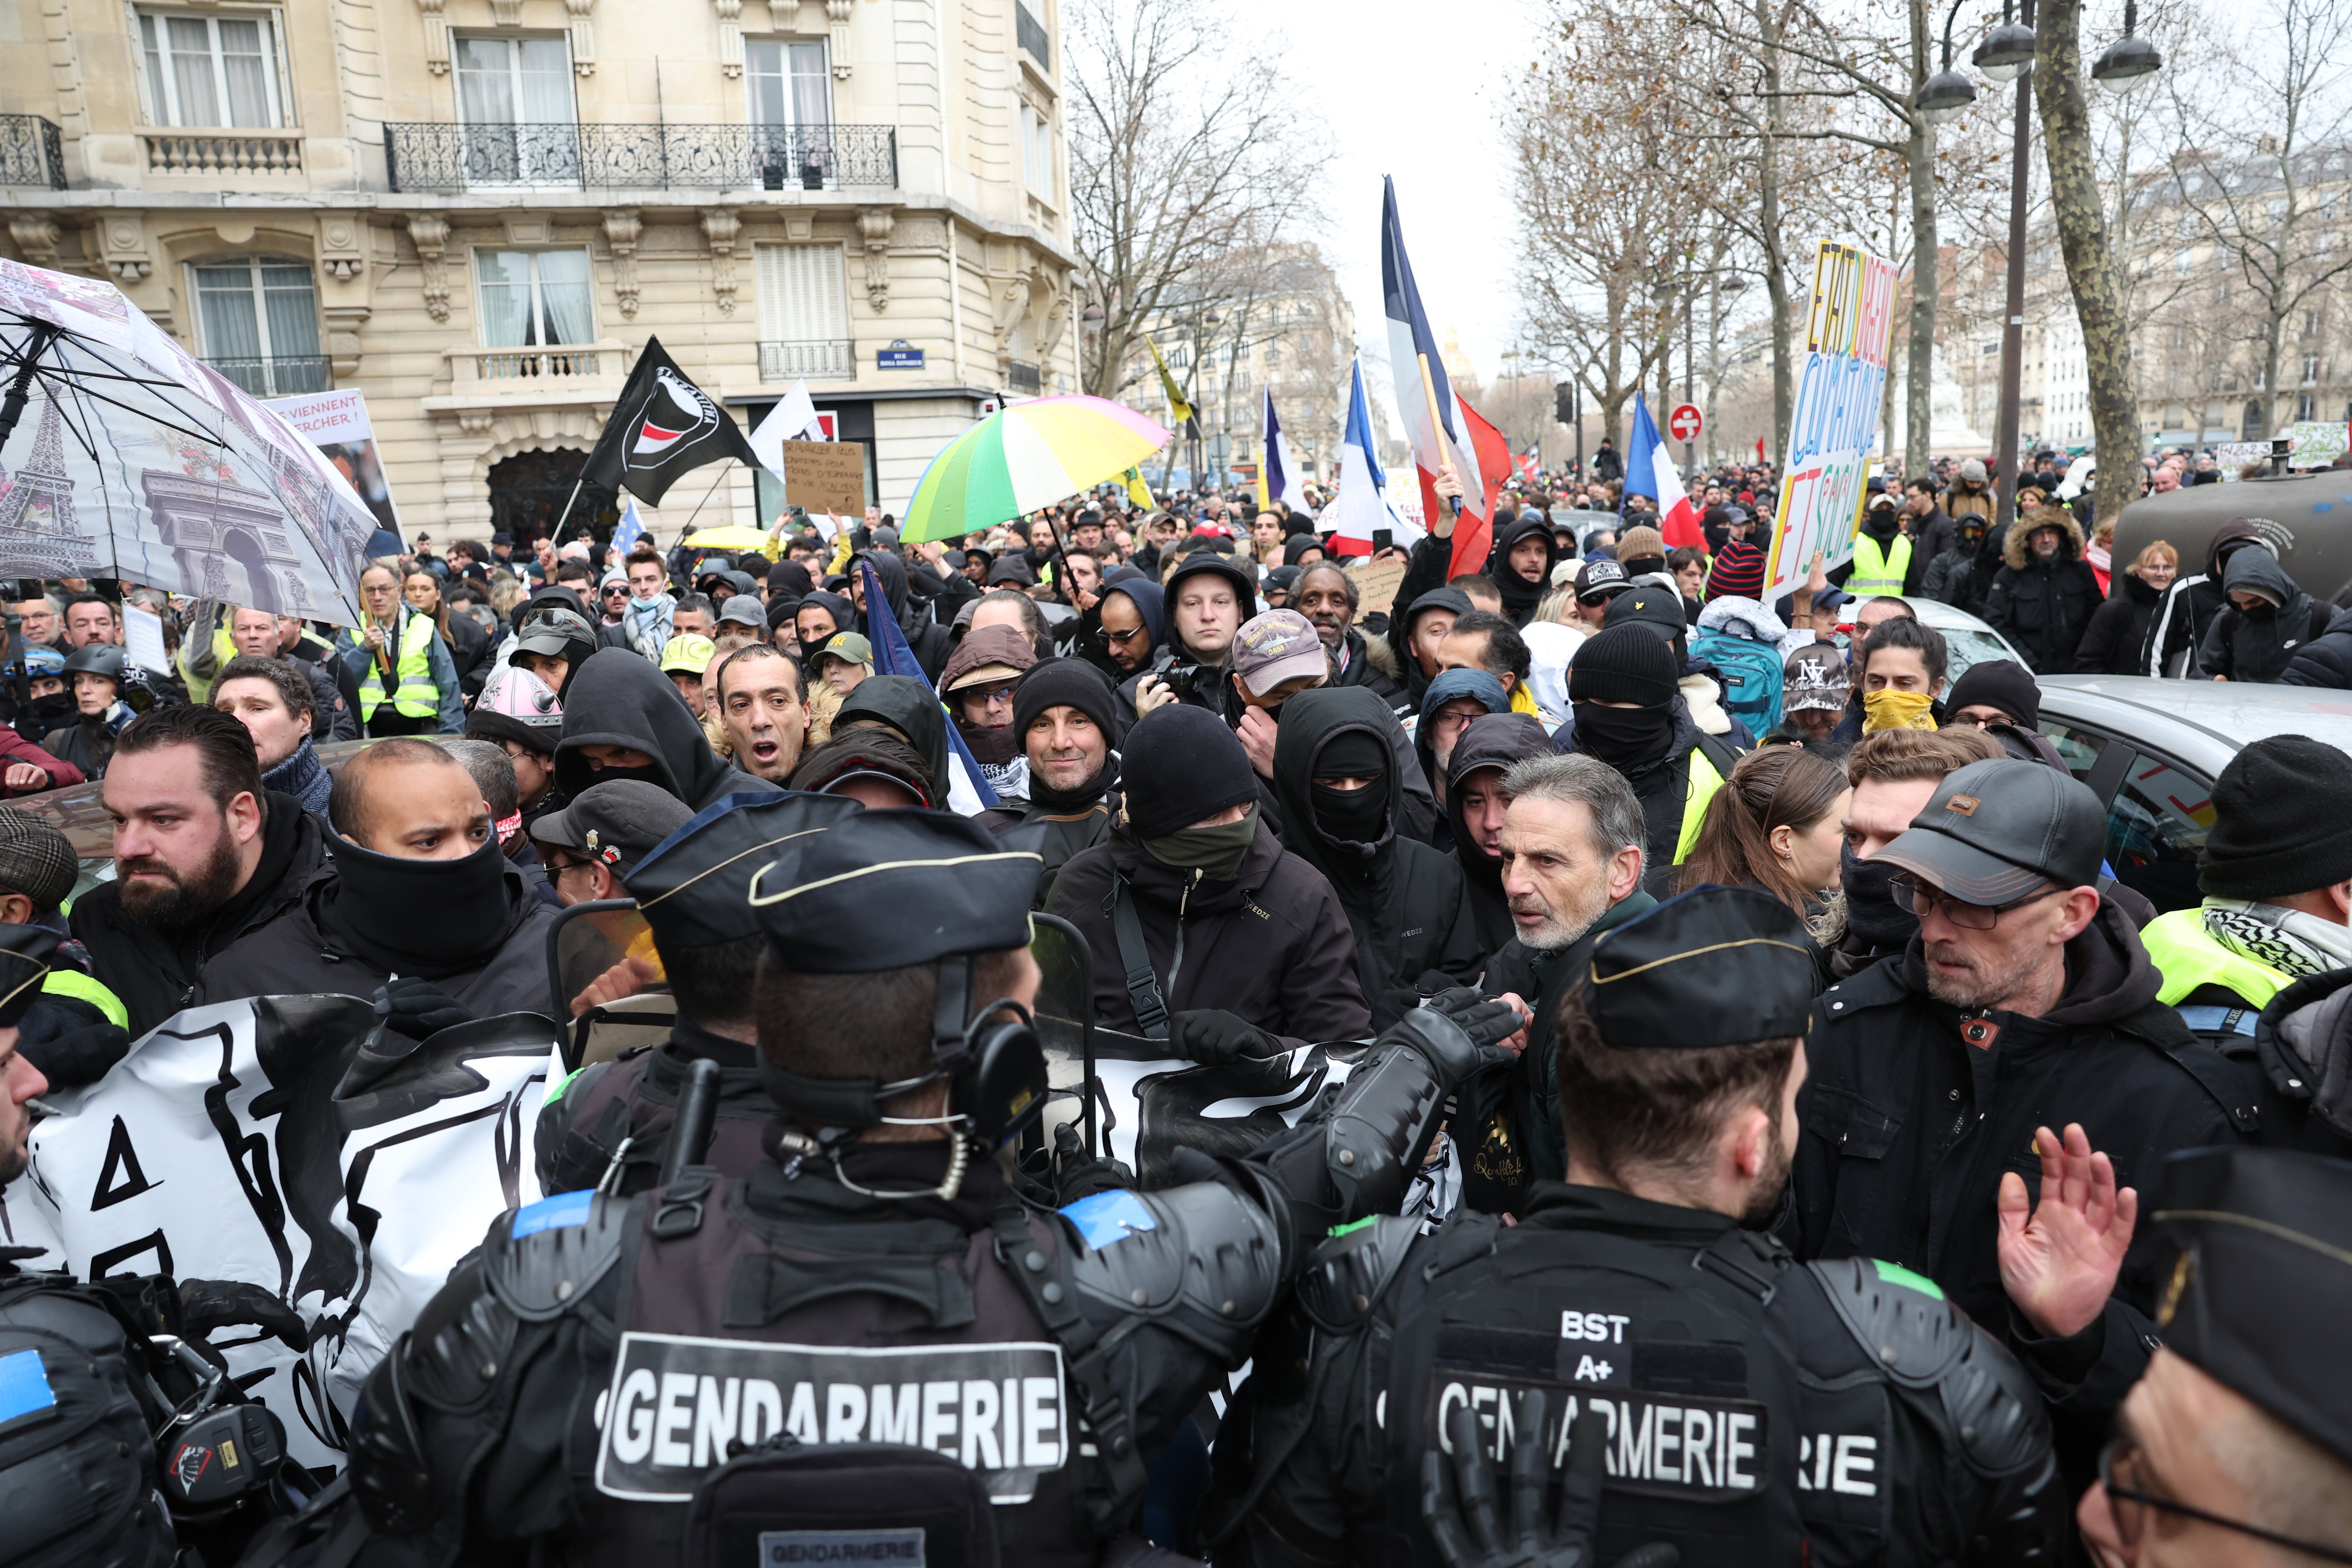 L'homme, un leader local des "gilets jaunes", participait à une manifestation contre les violences policières. (Illustration) LP/Arnaud Journois